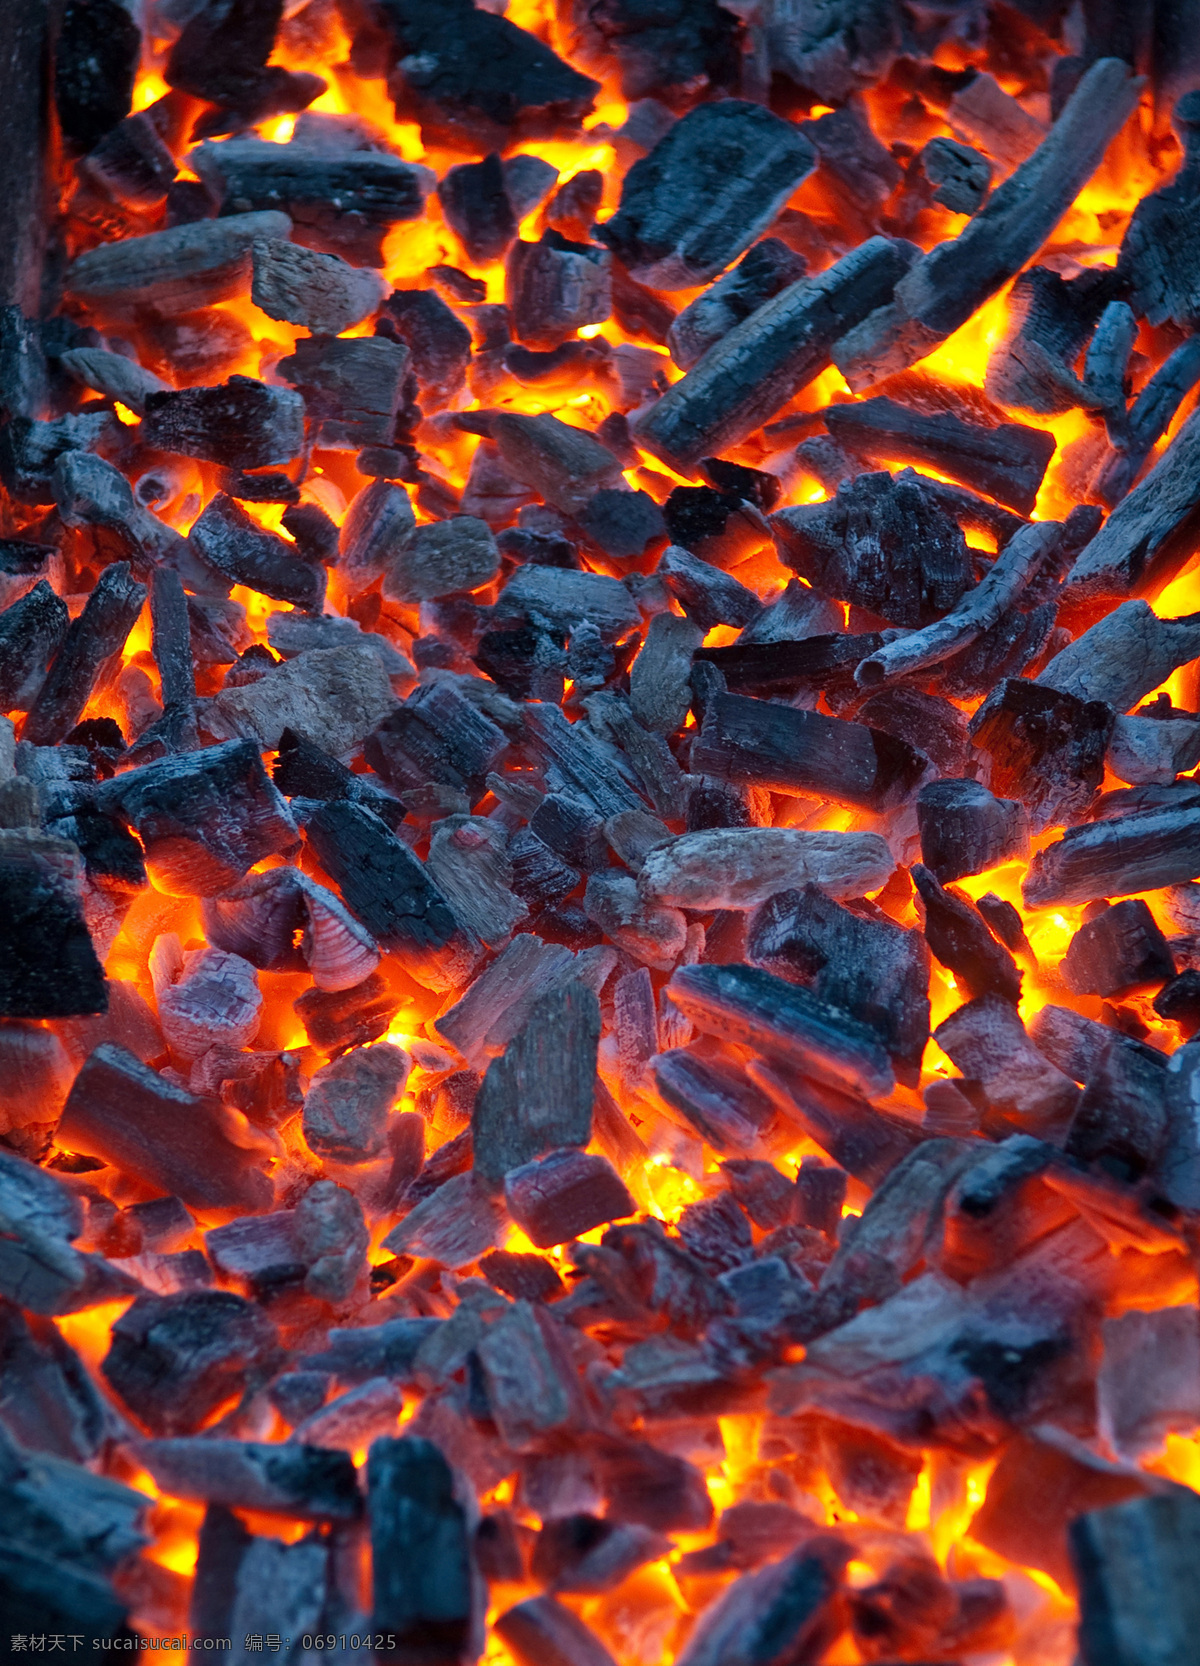 燃烧的木炭 木炭 煤炭 火焰 燃烧 烟雾